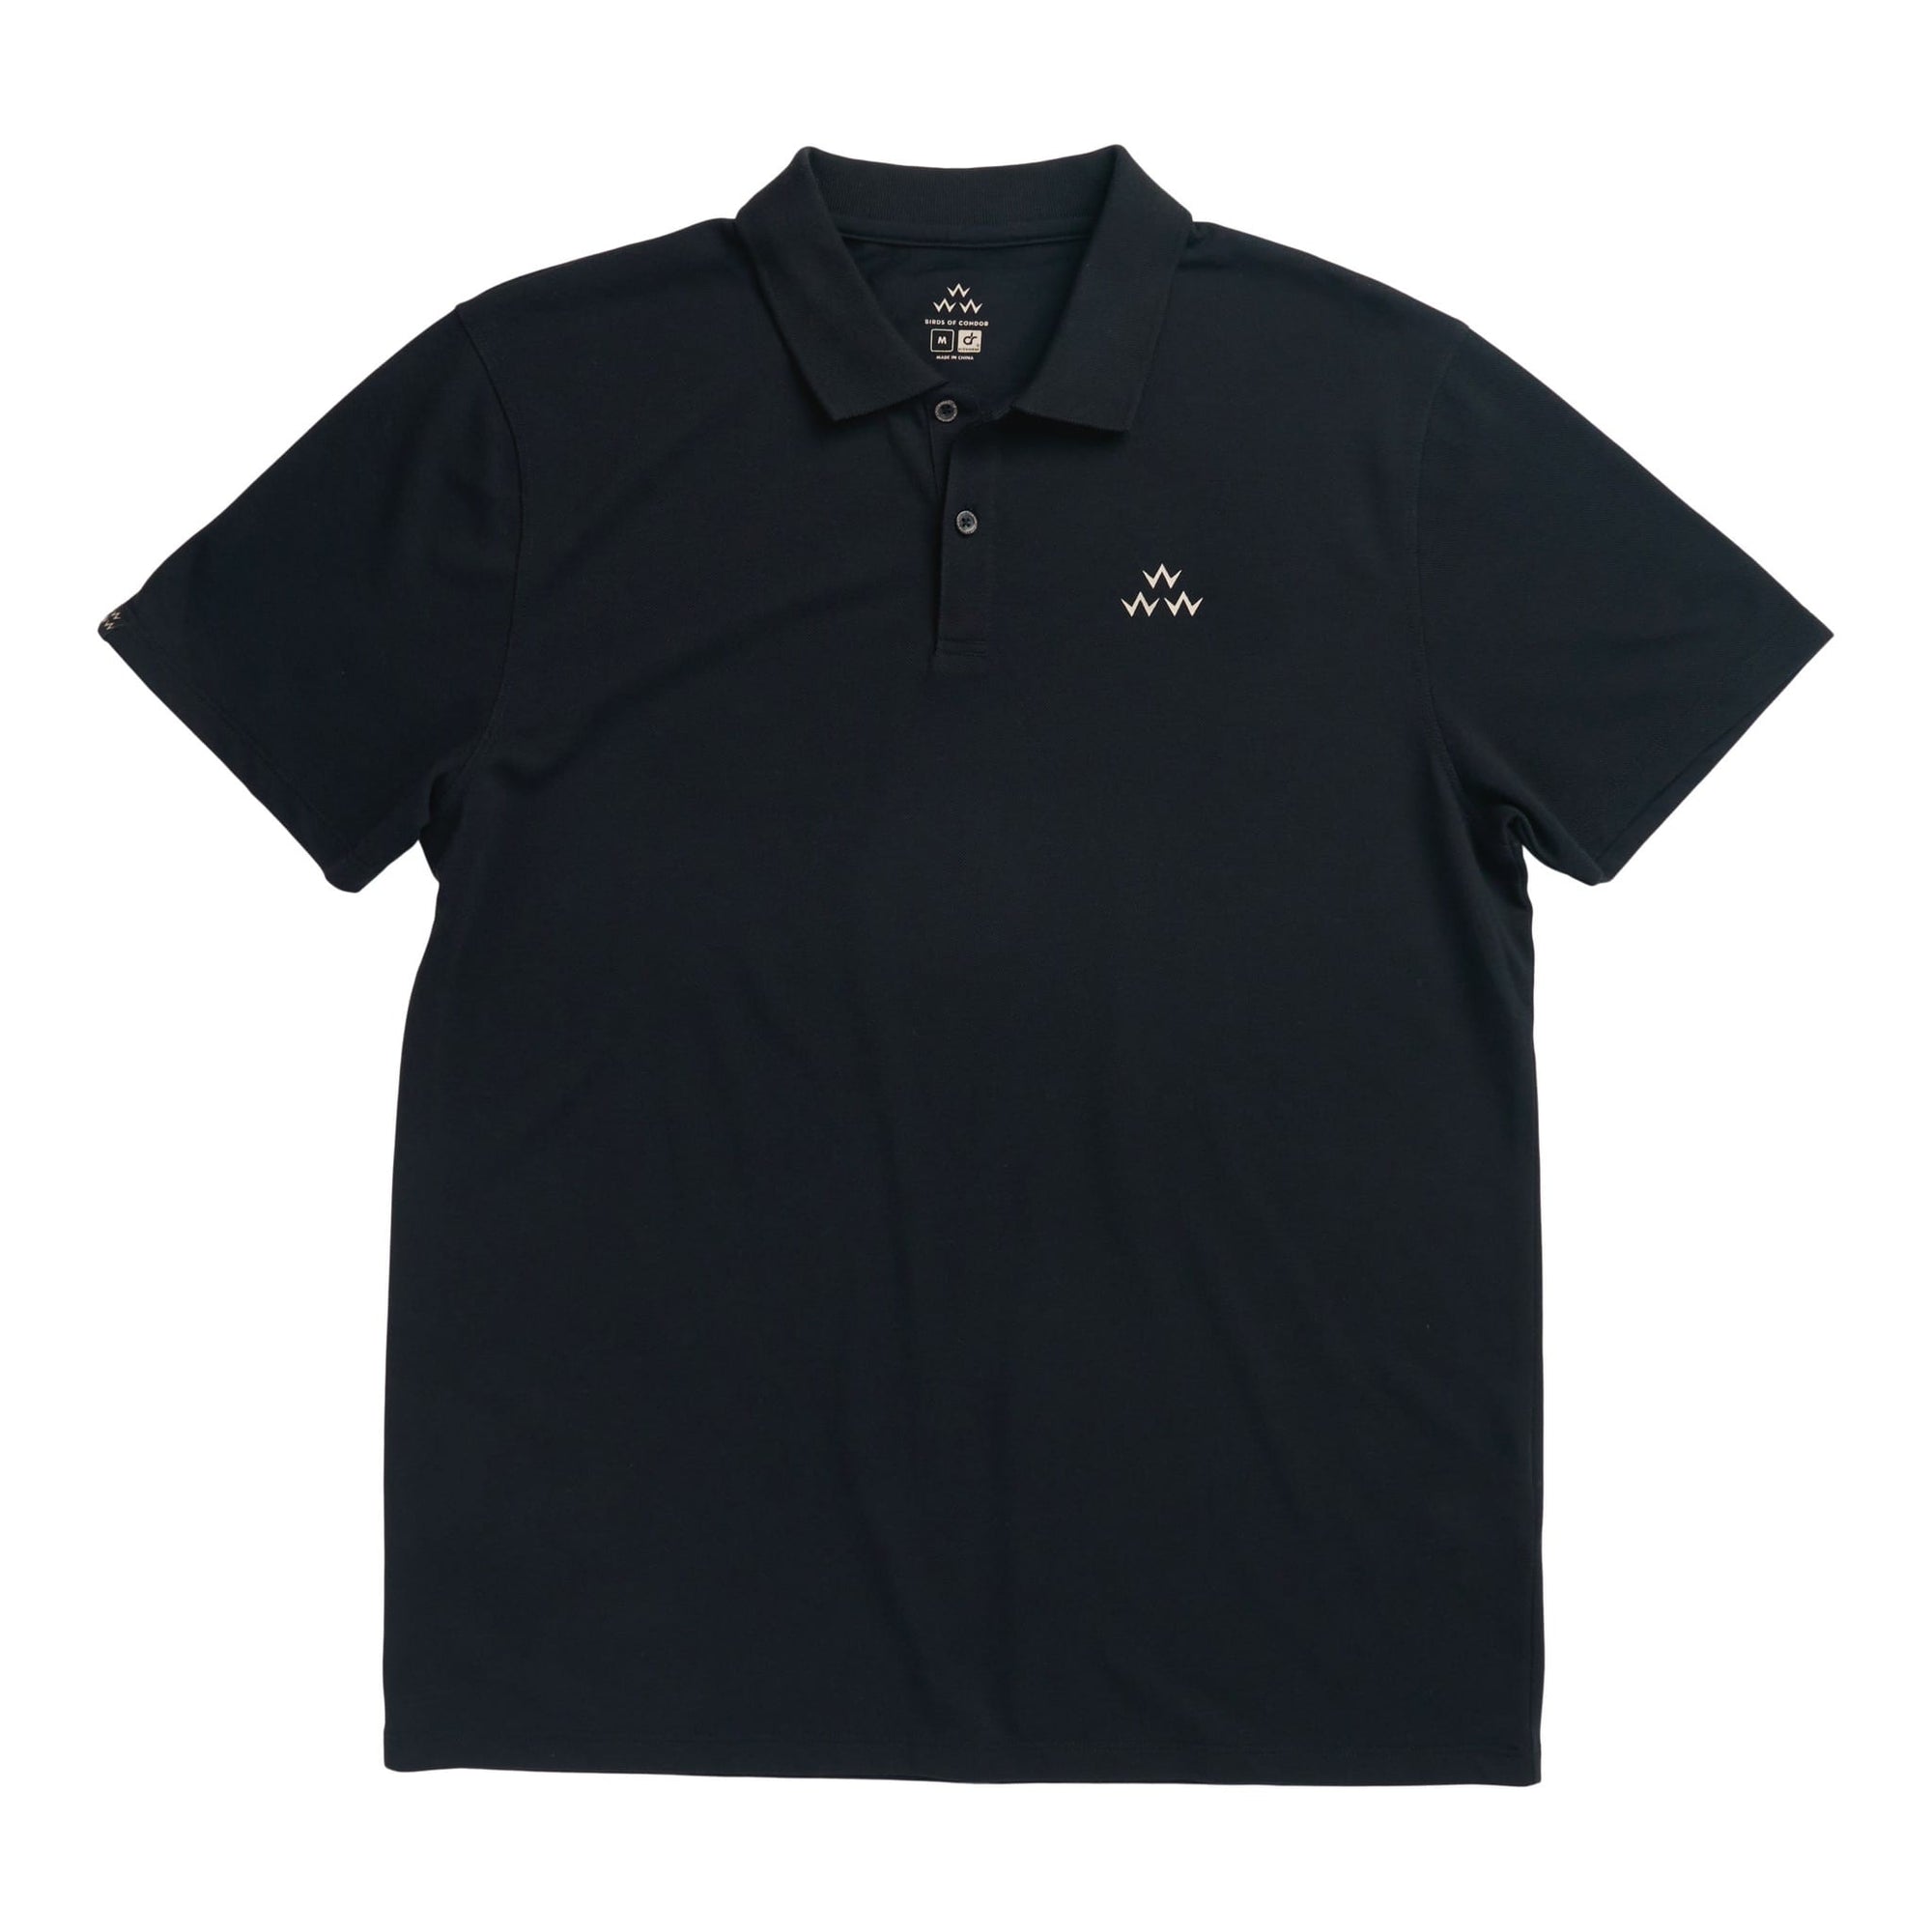 birds of condor black golf polo shirt front